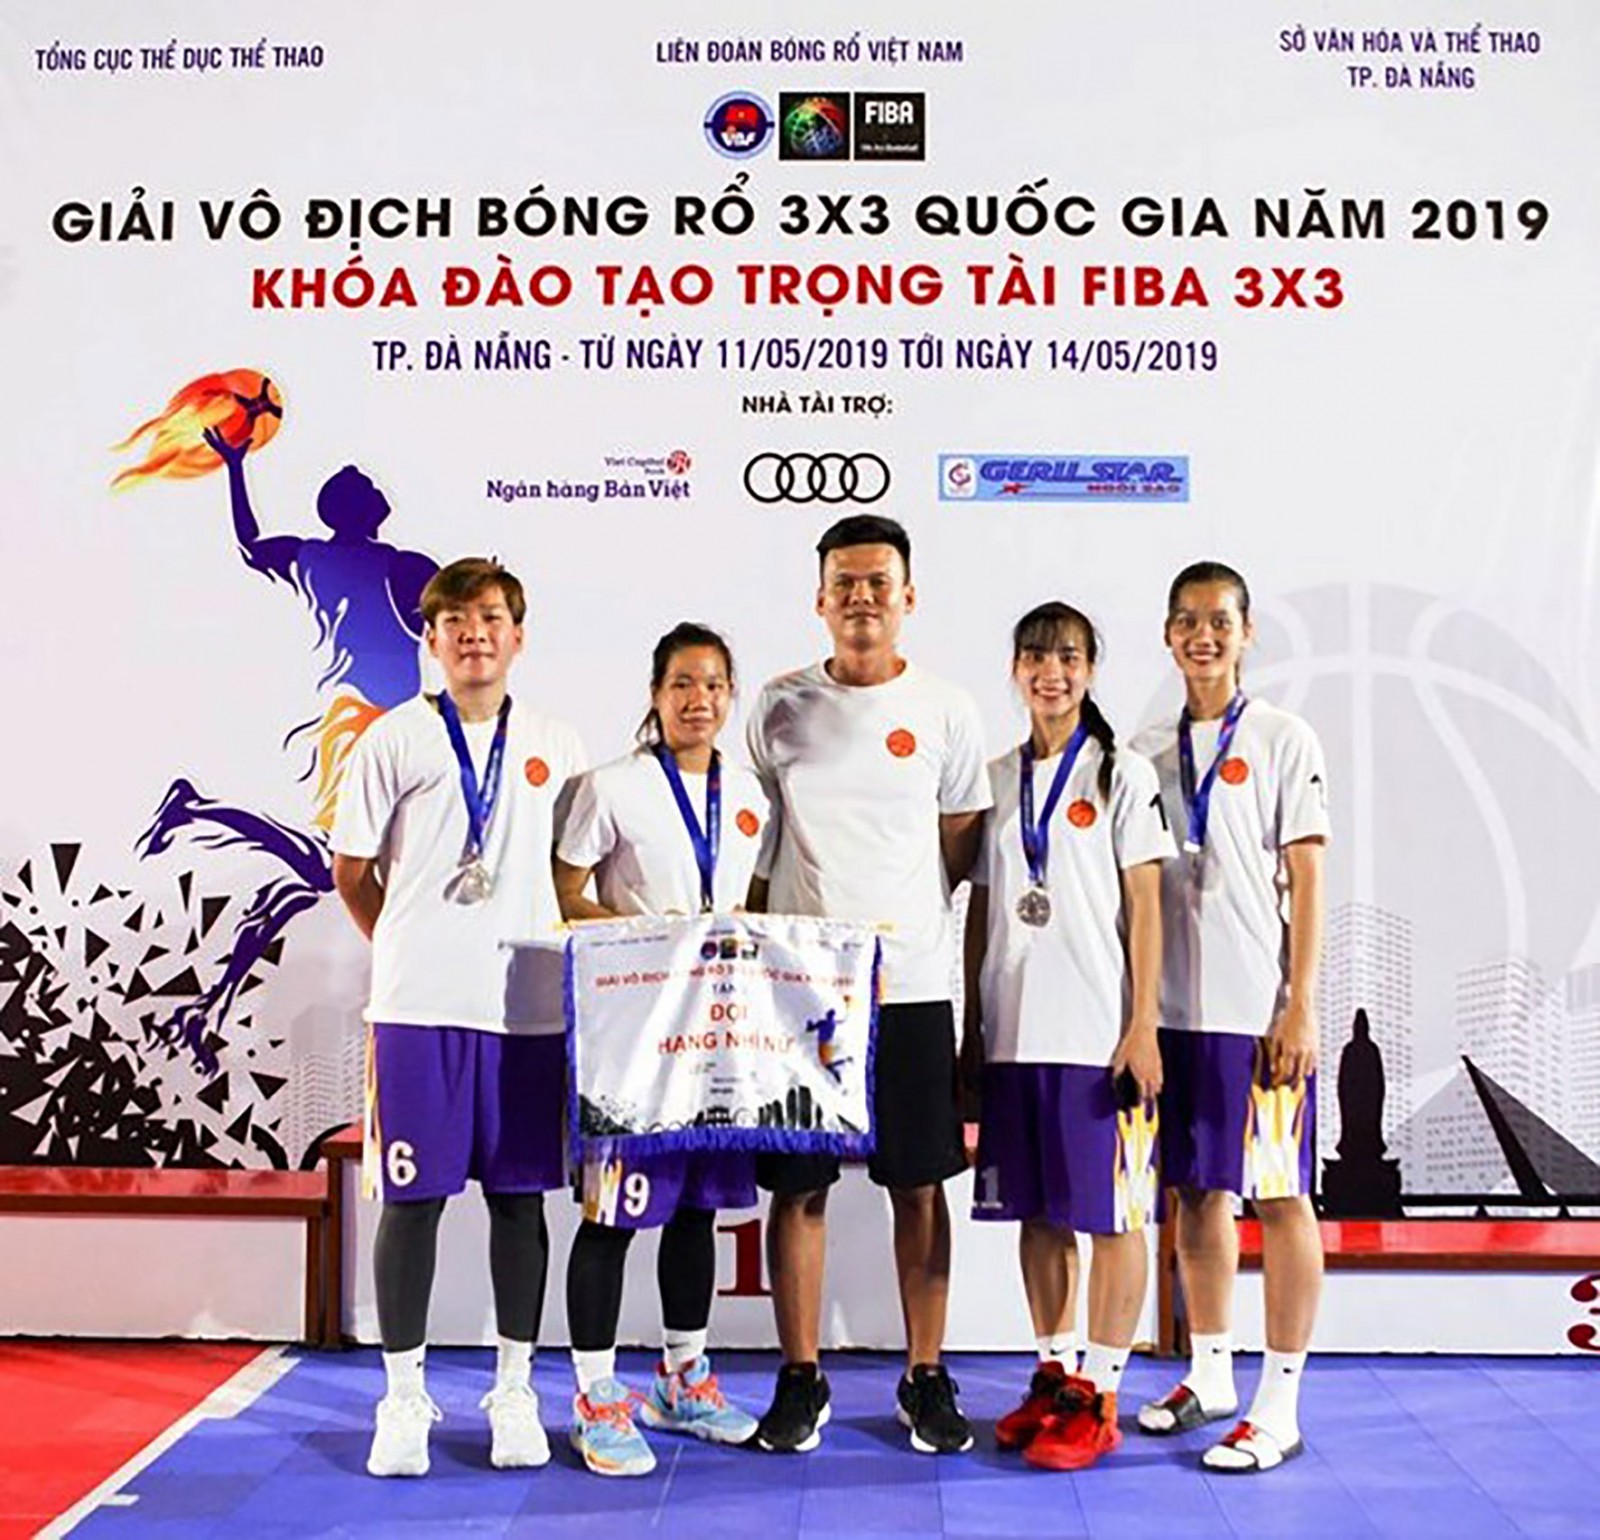 Đội nữ Bóng rổ Cần Thơ đoạt HCB Giải vô địch Bóng rổ 3x3 quốc gia năm 2019. Ảnh: MINH HIỀN